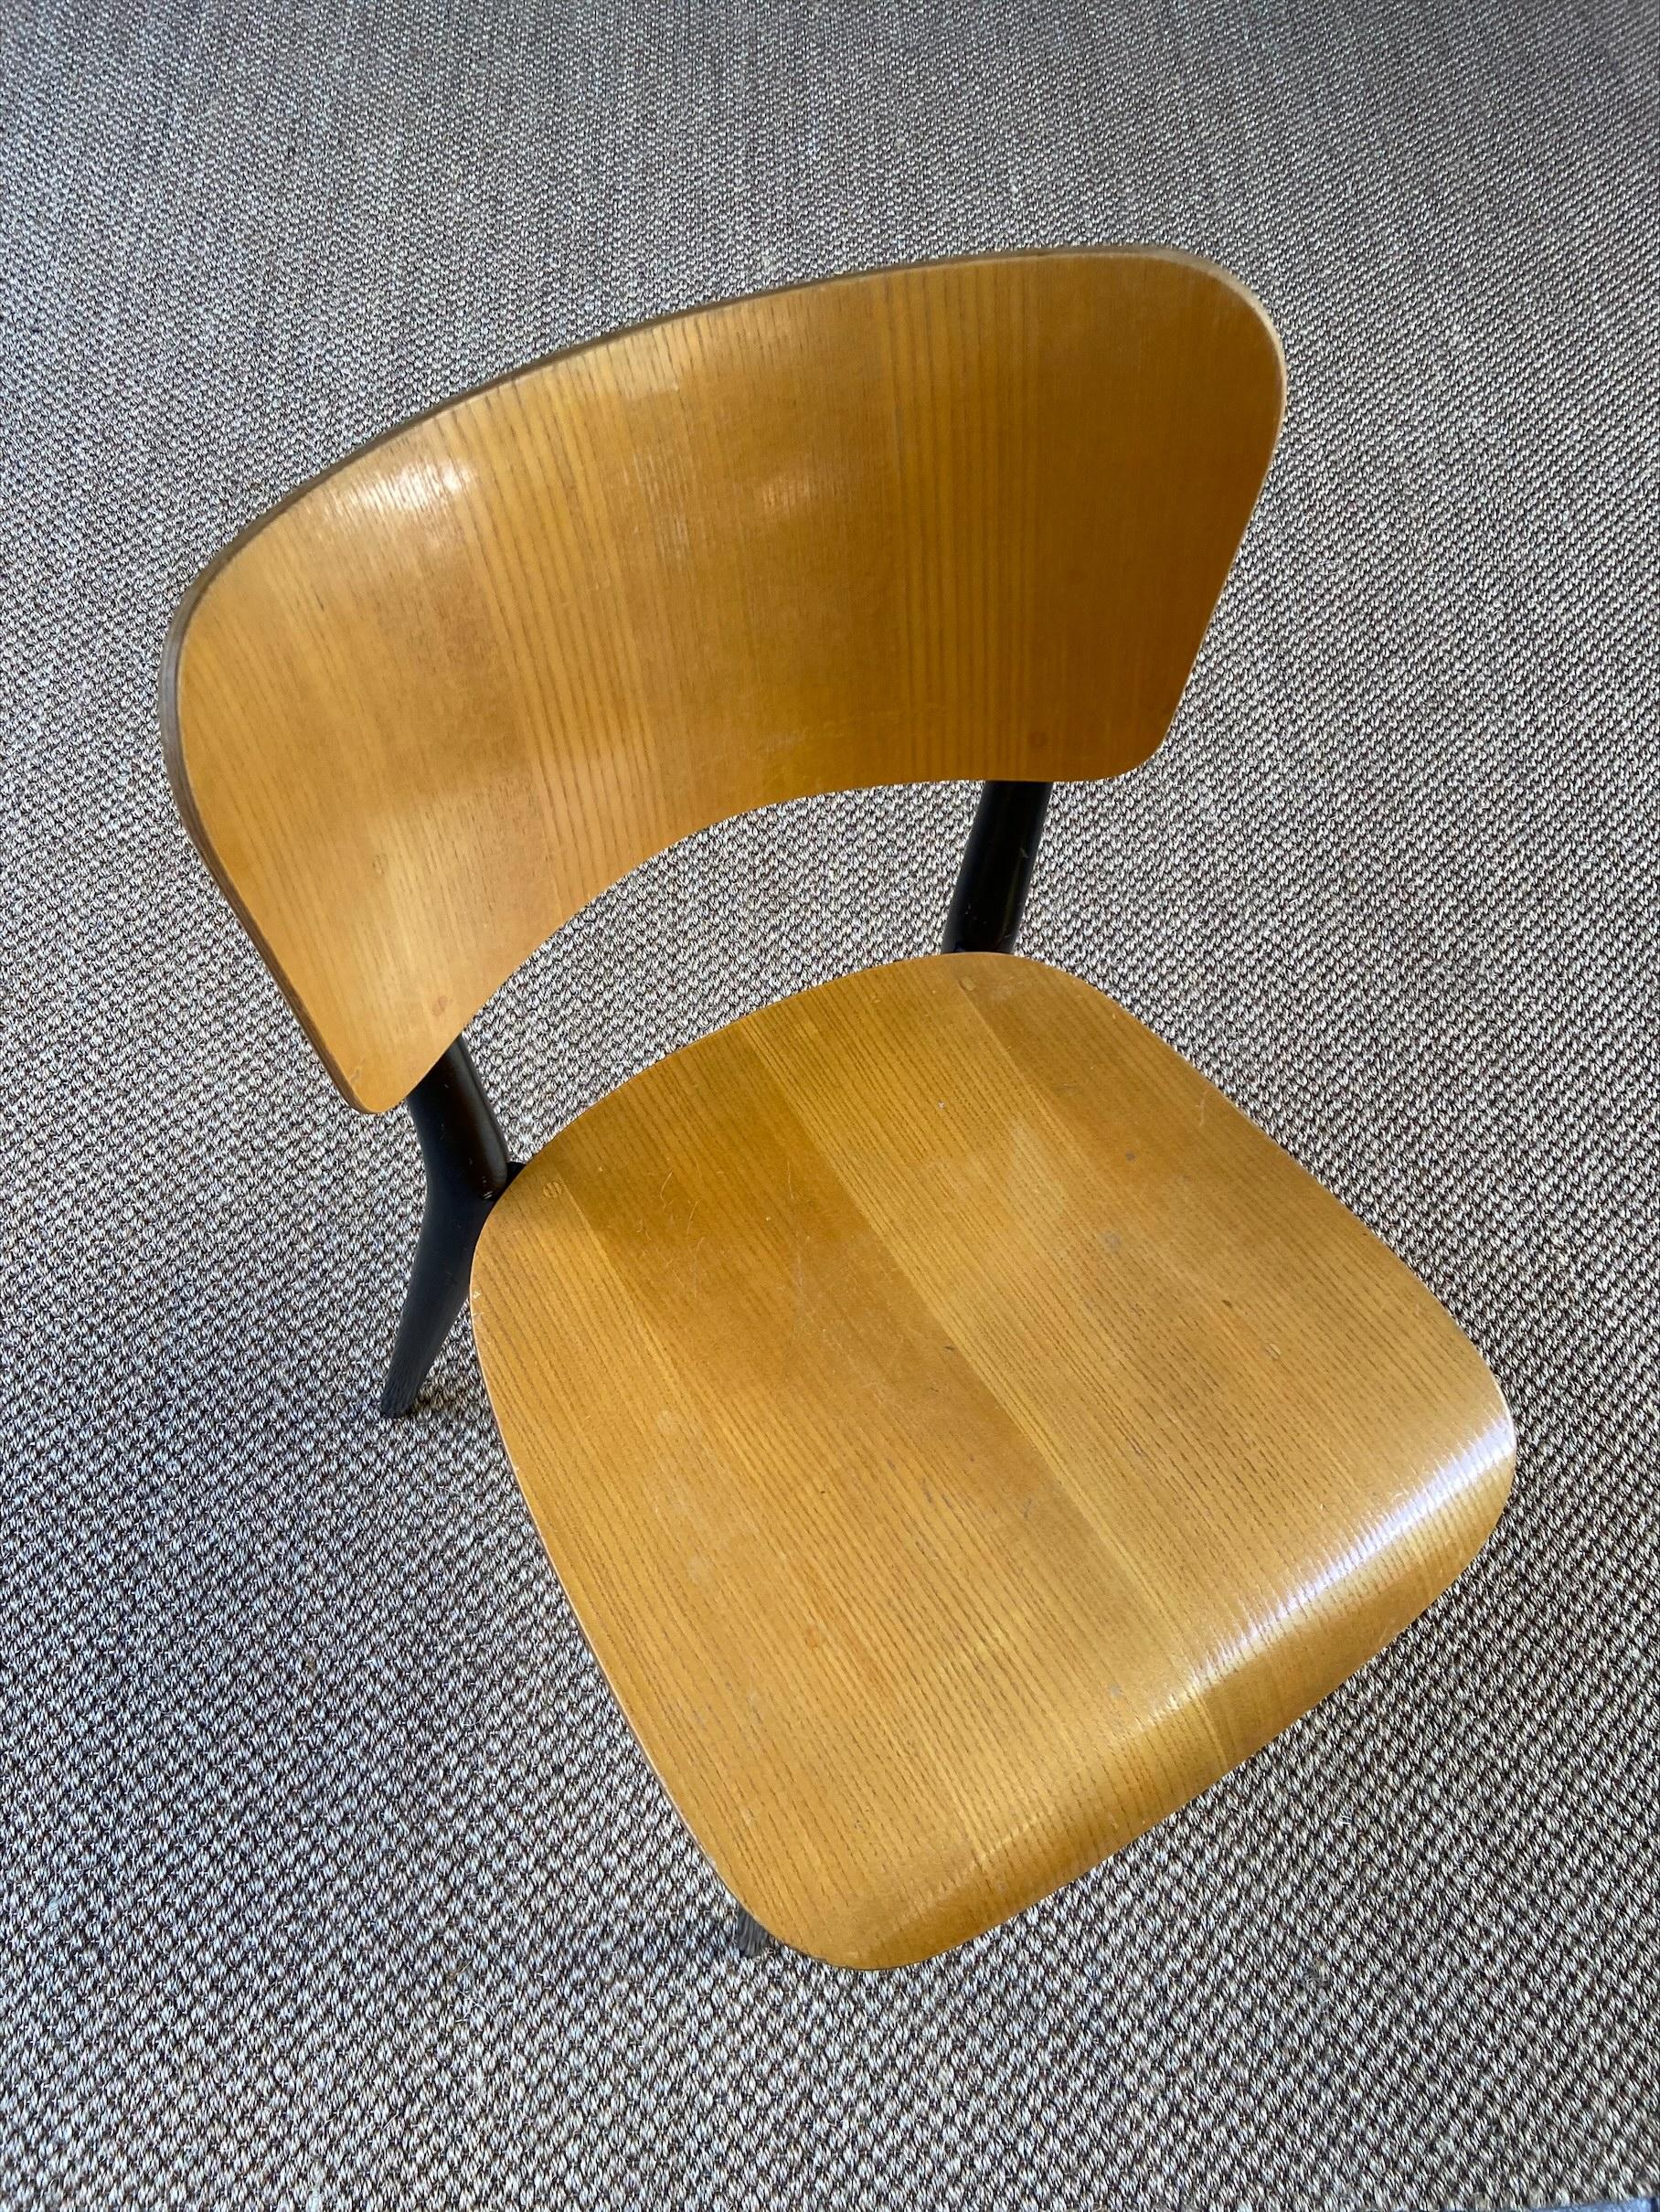 Modern Max Bill, Chair 